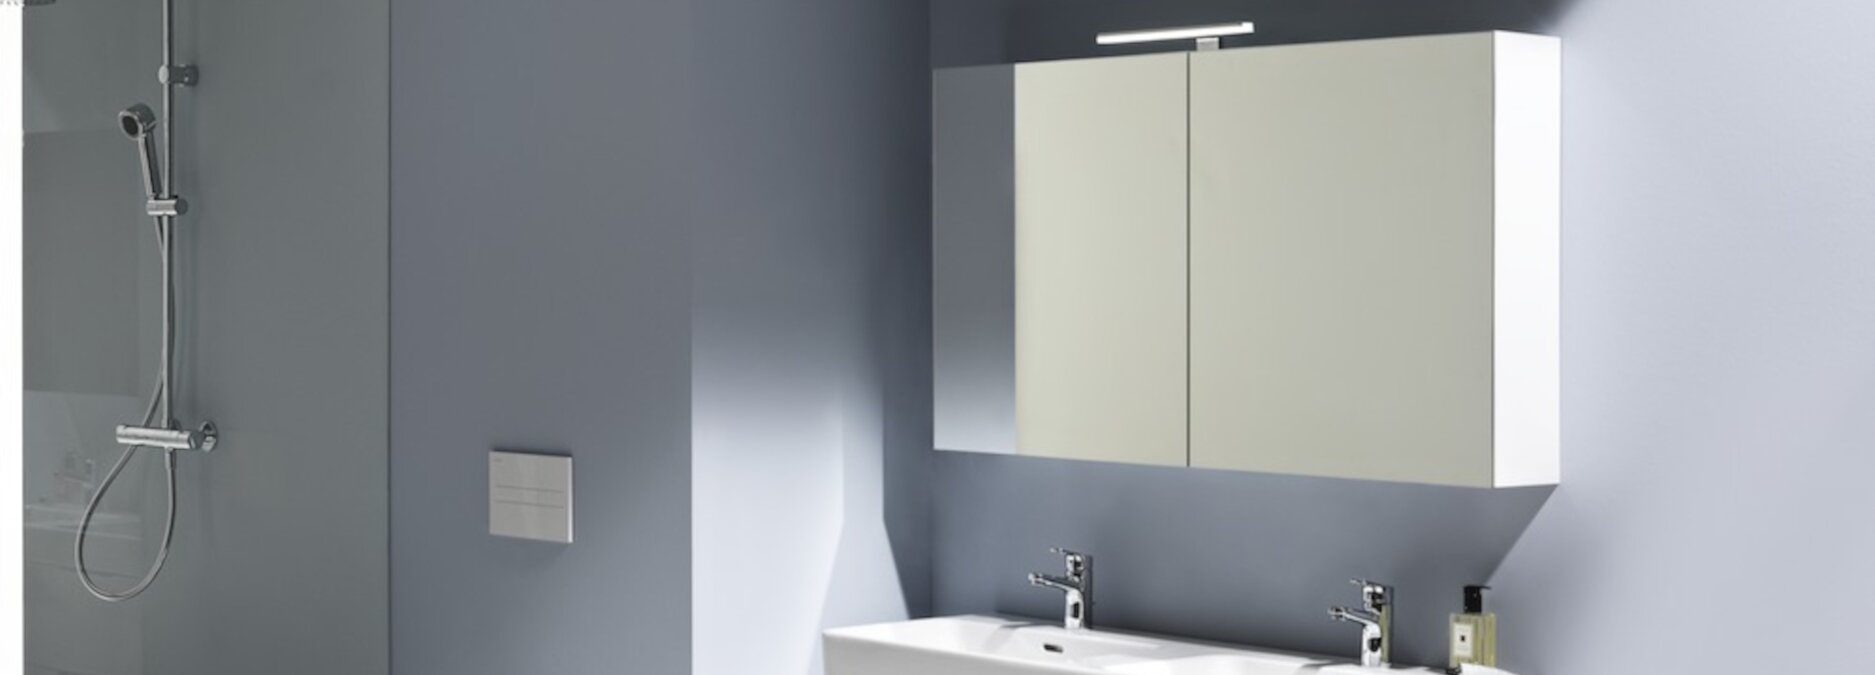 Spiegelschrank fürs Bad – vom unscheinbaren Möbelstück zum edlen Raumwunder  - Spiegelschränke für Ihr Bad | Blog ssd-armaturenshop.de